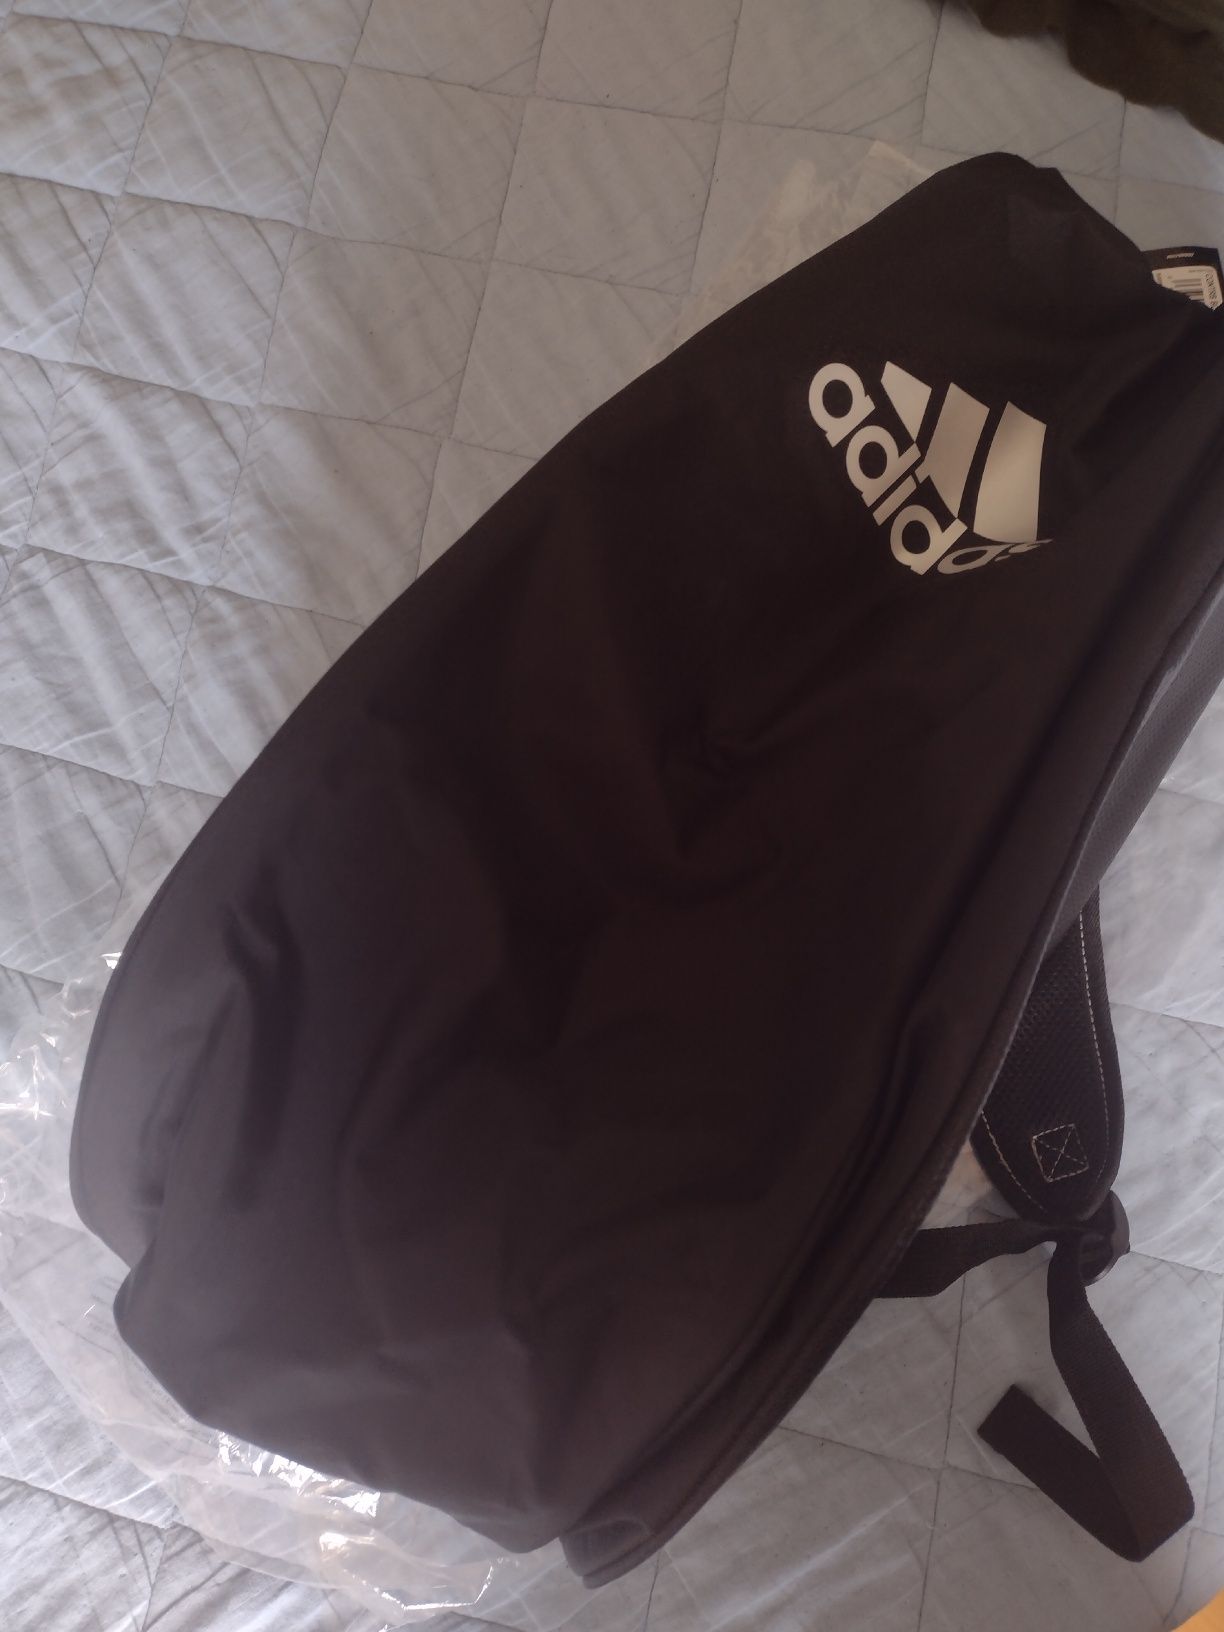 Saco - Adidas Racket Bag Carbón Control Black Silver - NOVO